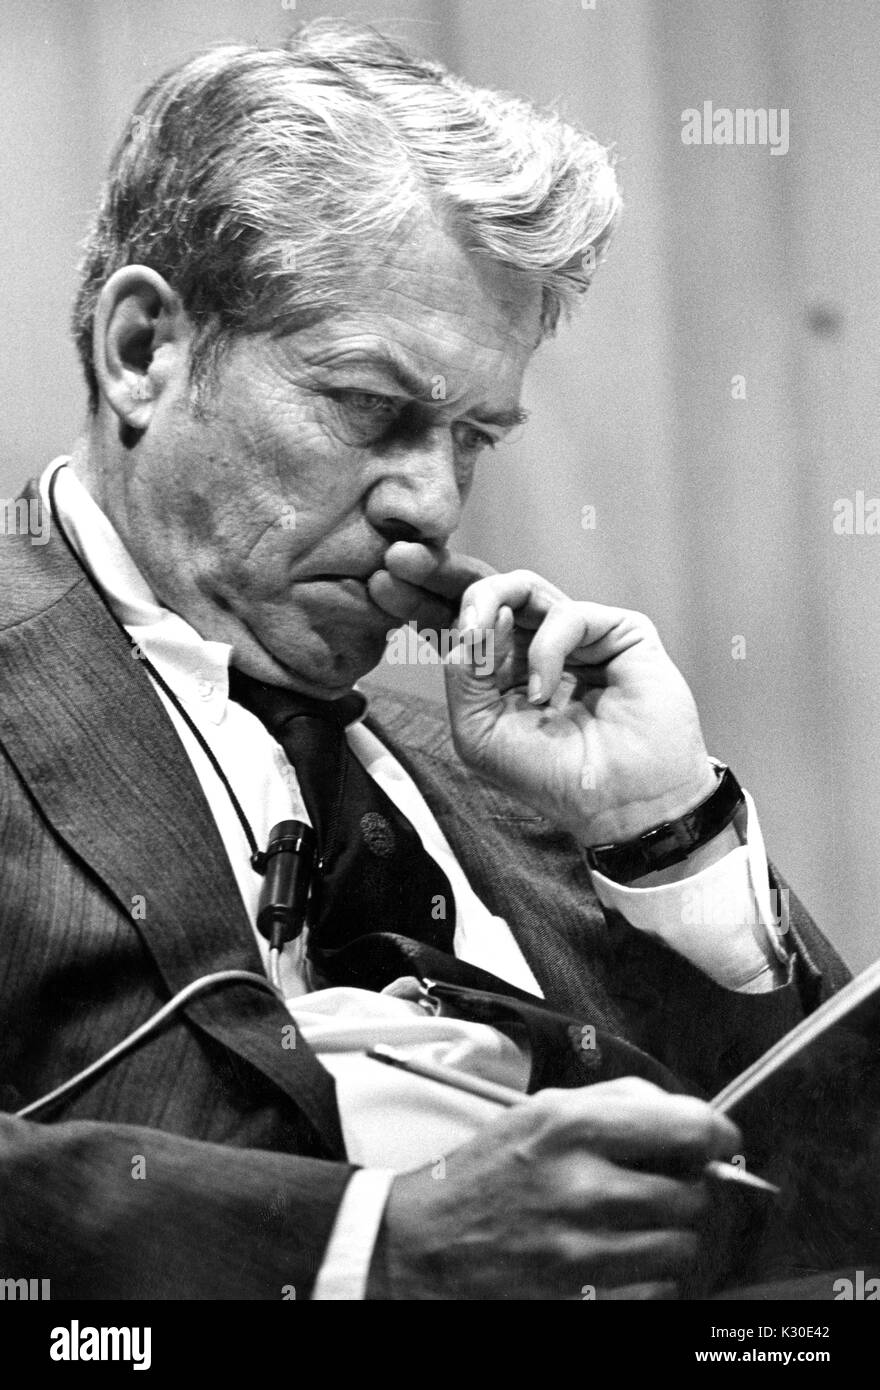 Une moitié du corps, portrait du rédacteur en chef de Time Inc Hedley Donovan se concentrant sur ce qu'il lit à l'Université Américaine Symposium, Washington DC, 21 février 1976. Banque D'Images